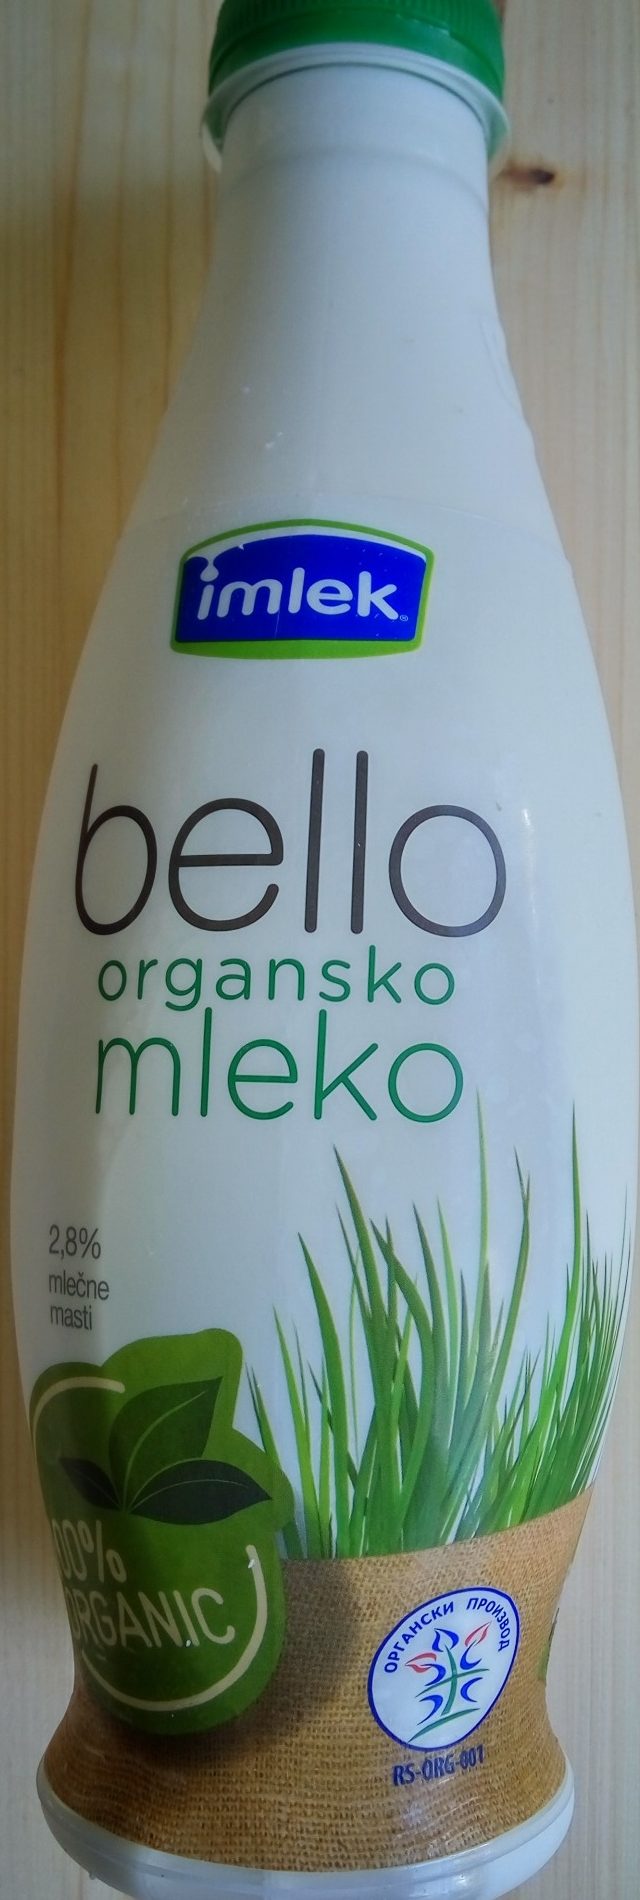 Bello organsko mleko - Proizvod - sr